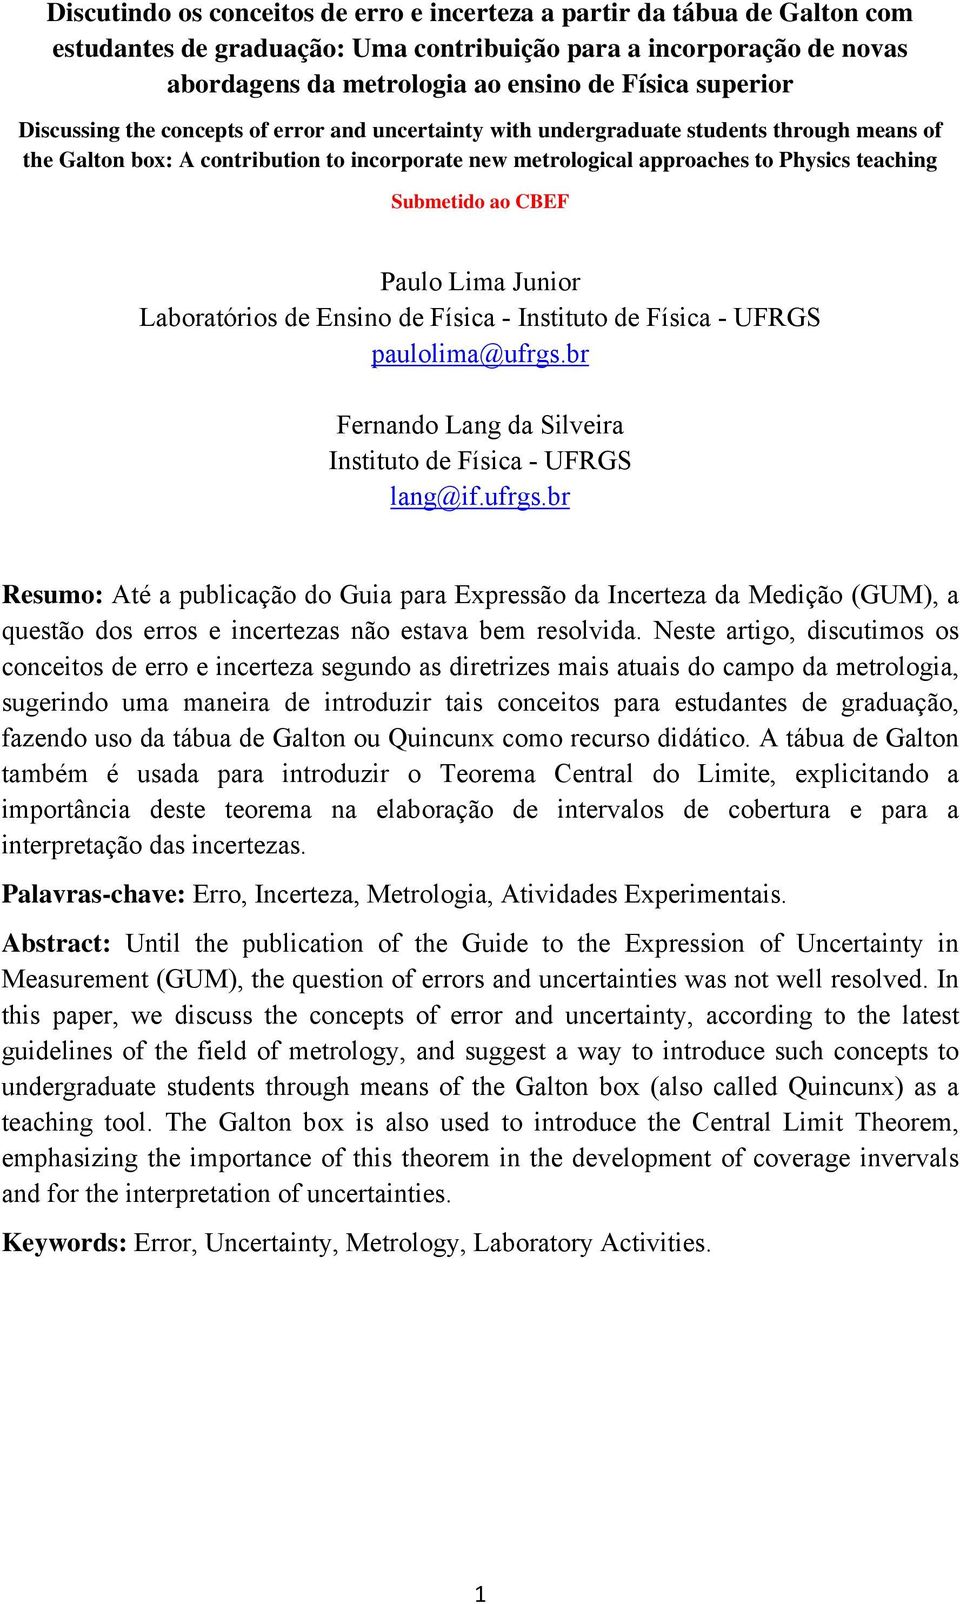 Submetido ao CBEF Paulo Lima Junior Laboratórios de Ensino de Física - Instituto de Física - UFRGS paulolima@ufrgs.